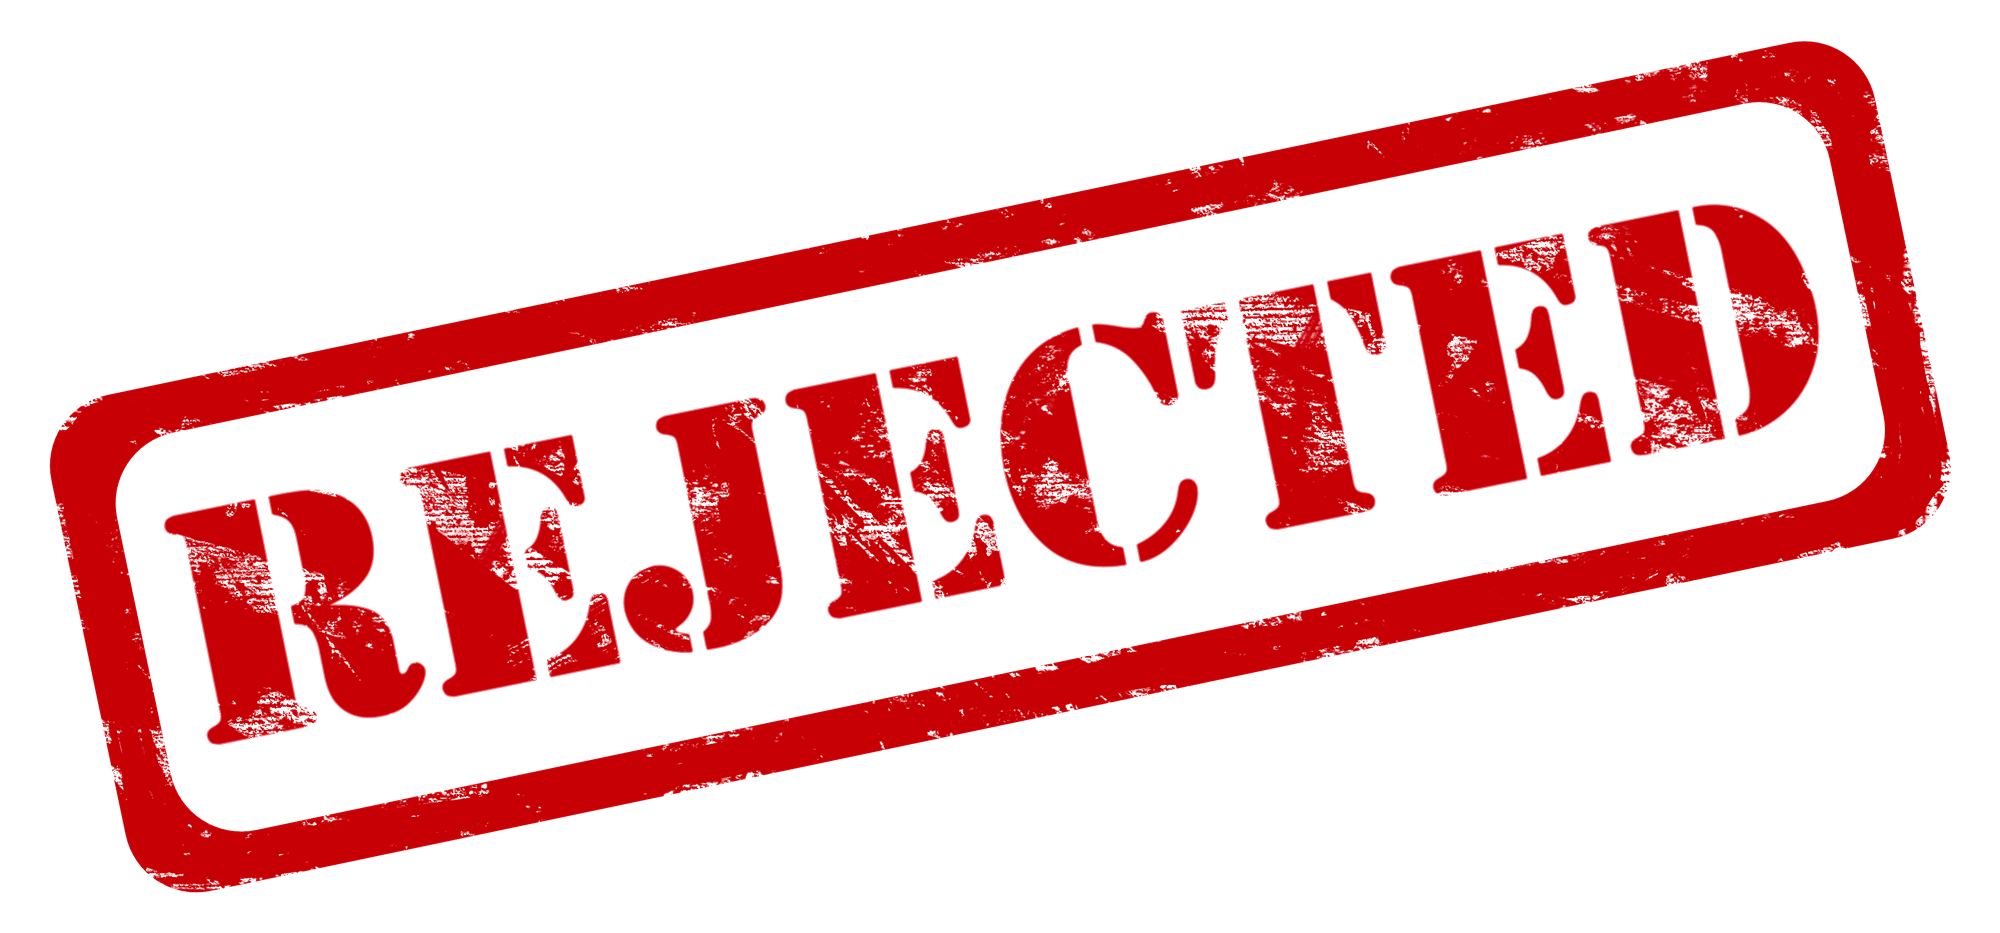 Rejected - Denied Stamp PNG HQ pngteam.com